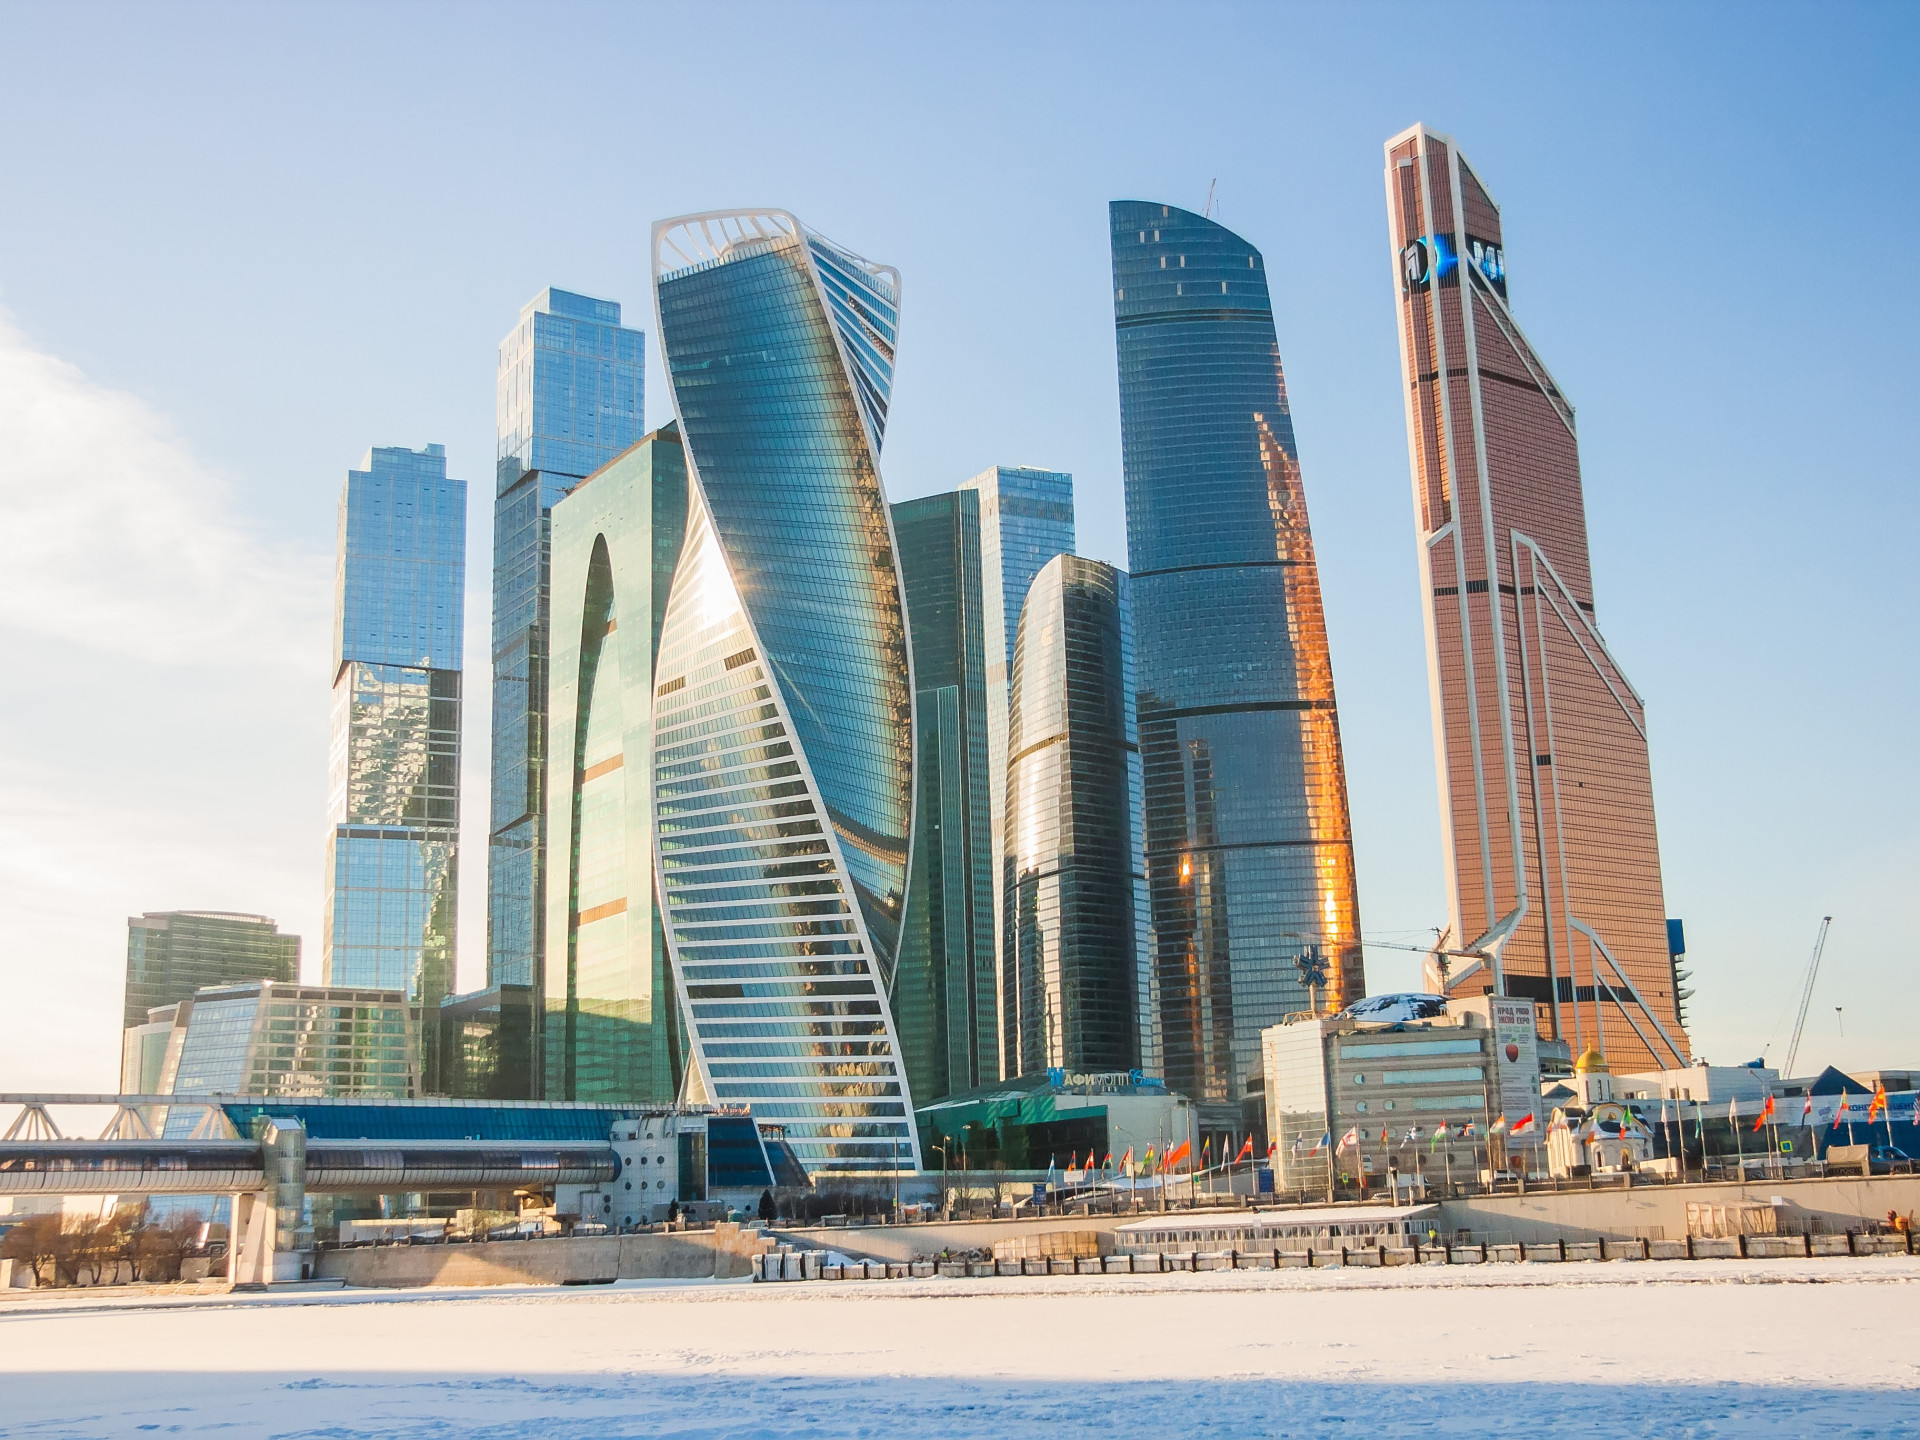 Le centre-ville de Moscou présente un étonnant éventail de bâtiments modernes qui reflètent parfaitement la richesse de la population.<p><a href="https://www.msn.com/fr-ca/community/channel/vid-7xx8mnucu55yw63we9va2gwr7uihbxwc68fxqp25x6tg4ftibpra?cvid=94631541bc0f4f89bfd59158d696ad7e">Suivez-nous et accédez tous les jours à du contenu exclusif</a></p>